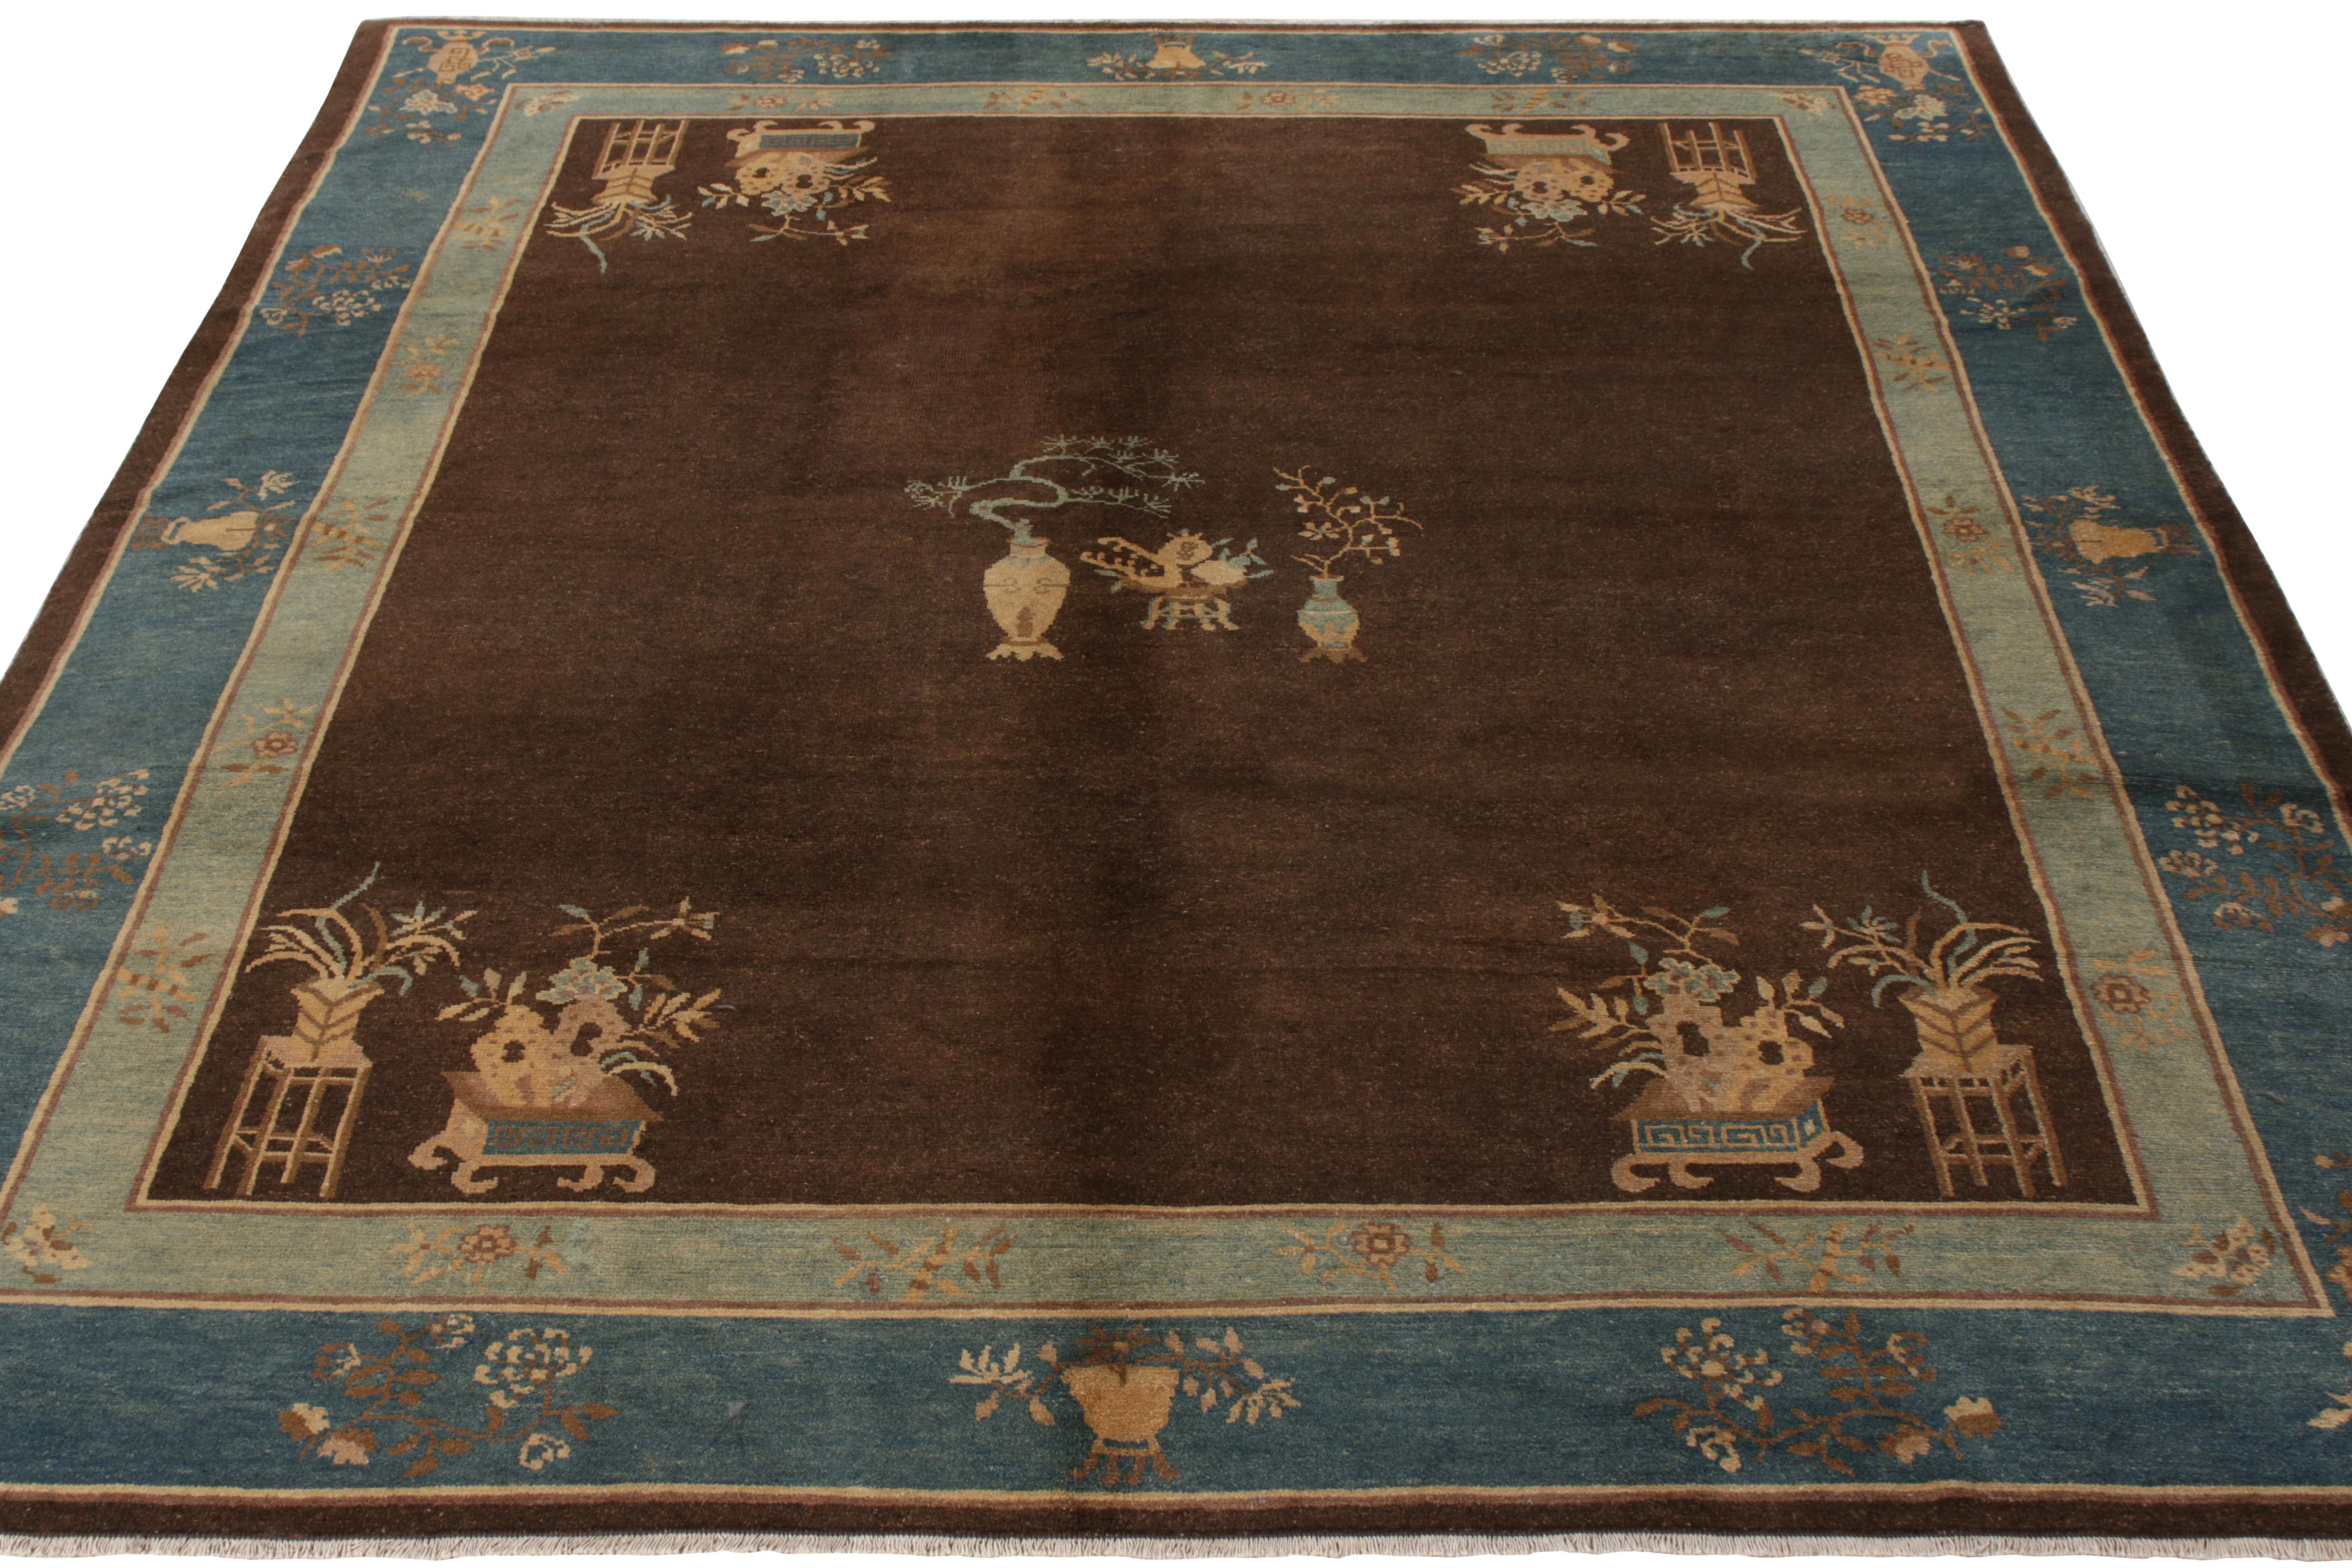 Un tapis pékinois ancien originaire de Chine vers 1920-1930. En laine nouée à la main, ce tapis 8x9 présente une sensibilité déco chinoise exemplaire, avec un motif floral pictural omniprésent qui présente des vases de fleurs en médaillon central et